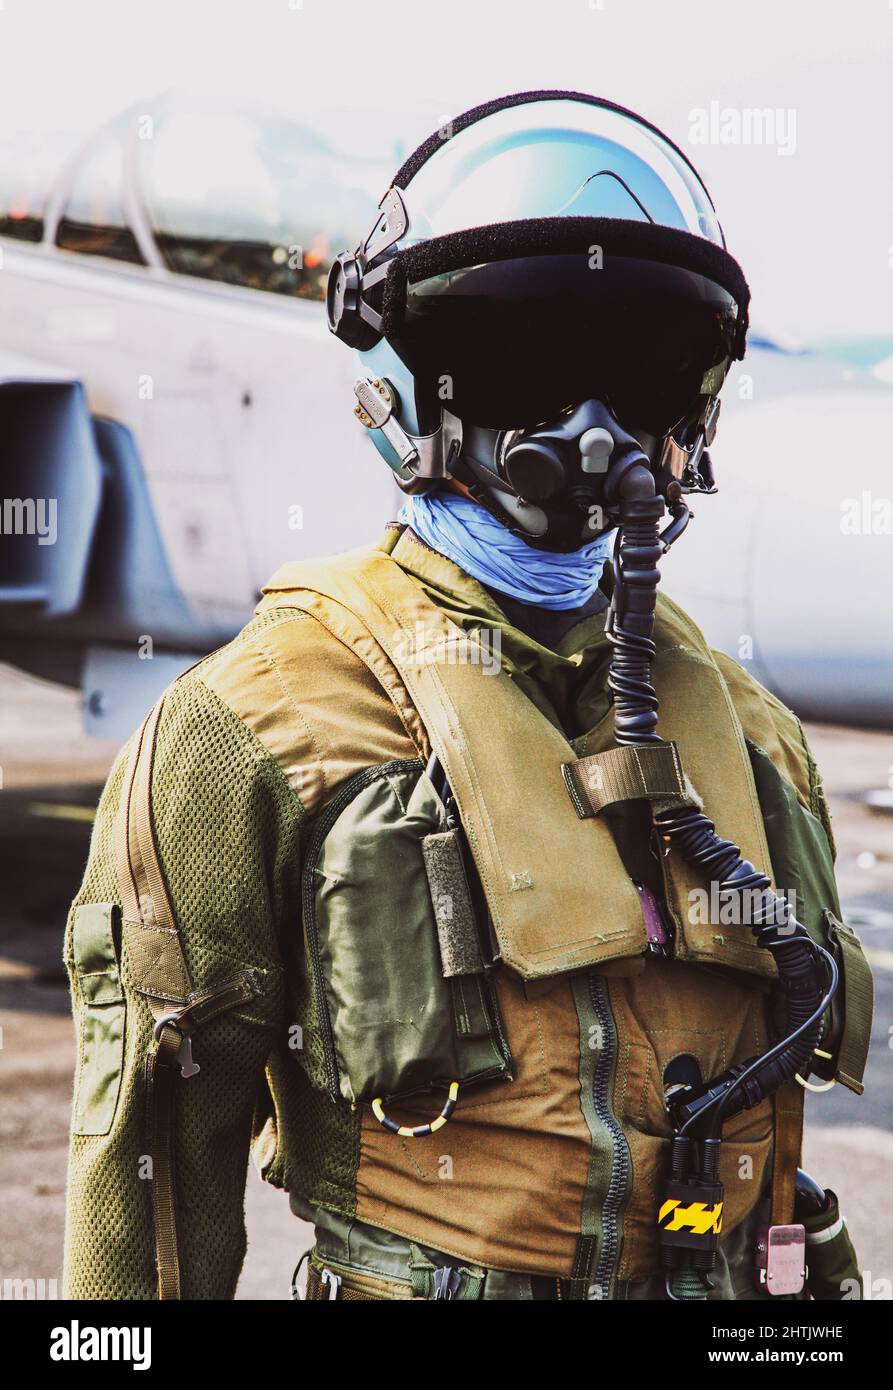 Pilote de chasse en casque et en costume avec masque à oxygène devant le chasseur. Banque D'Images